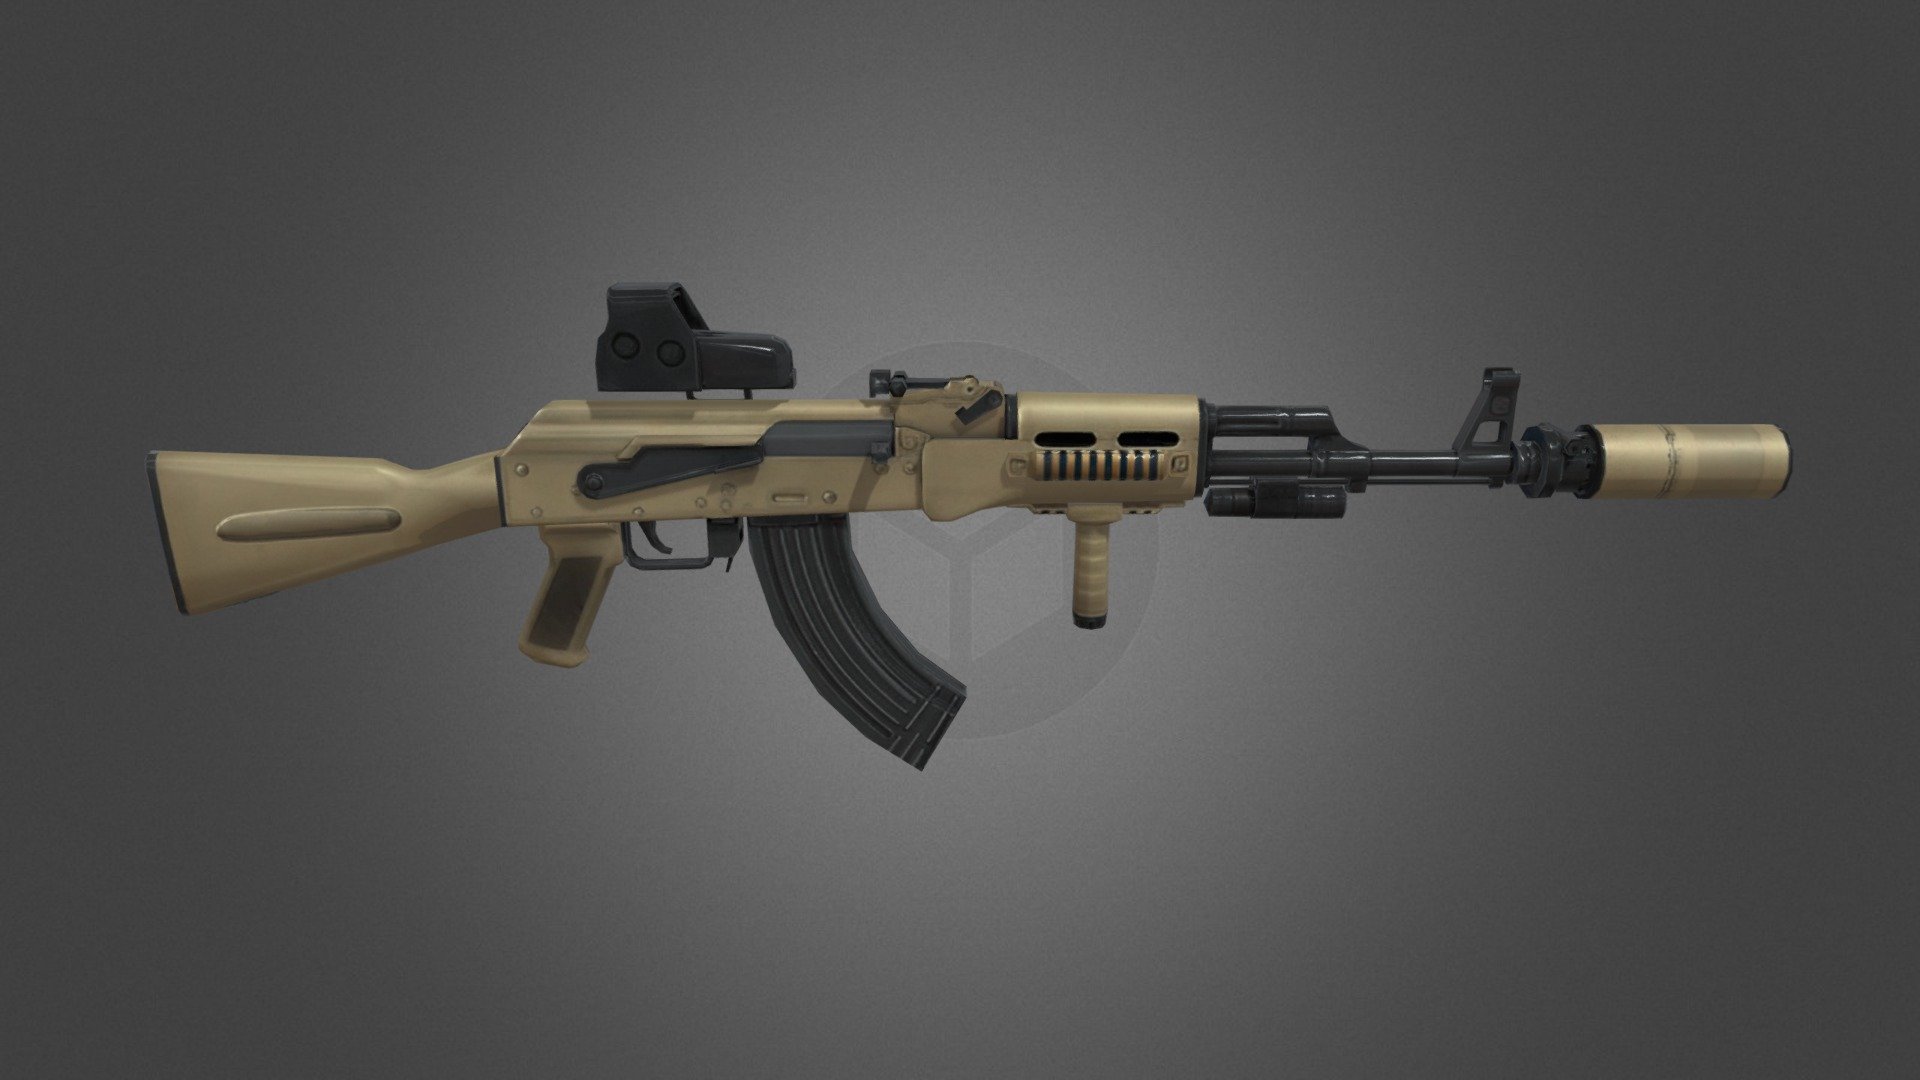 El fusil de asalto AK-74 es una versión modernizada del AKM, fue desarrollado en 1974 y es de calibre 5,45 mm, siendo Modelo Ruso 1974. 

-Bajo poli

Si tienes alguna duda escribeme a mis redes:

-Twitter: @danixs_designer - Fusil - AK-74 - Download Free 3D model by DanixsDesigner (@DanixsDesigner4774) 3d model